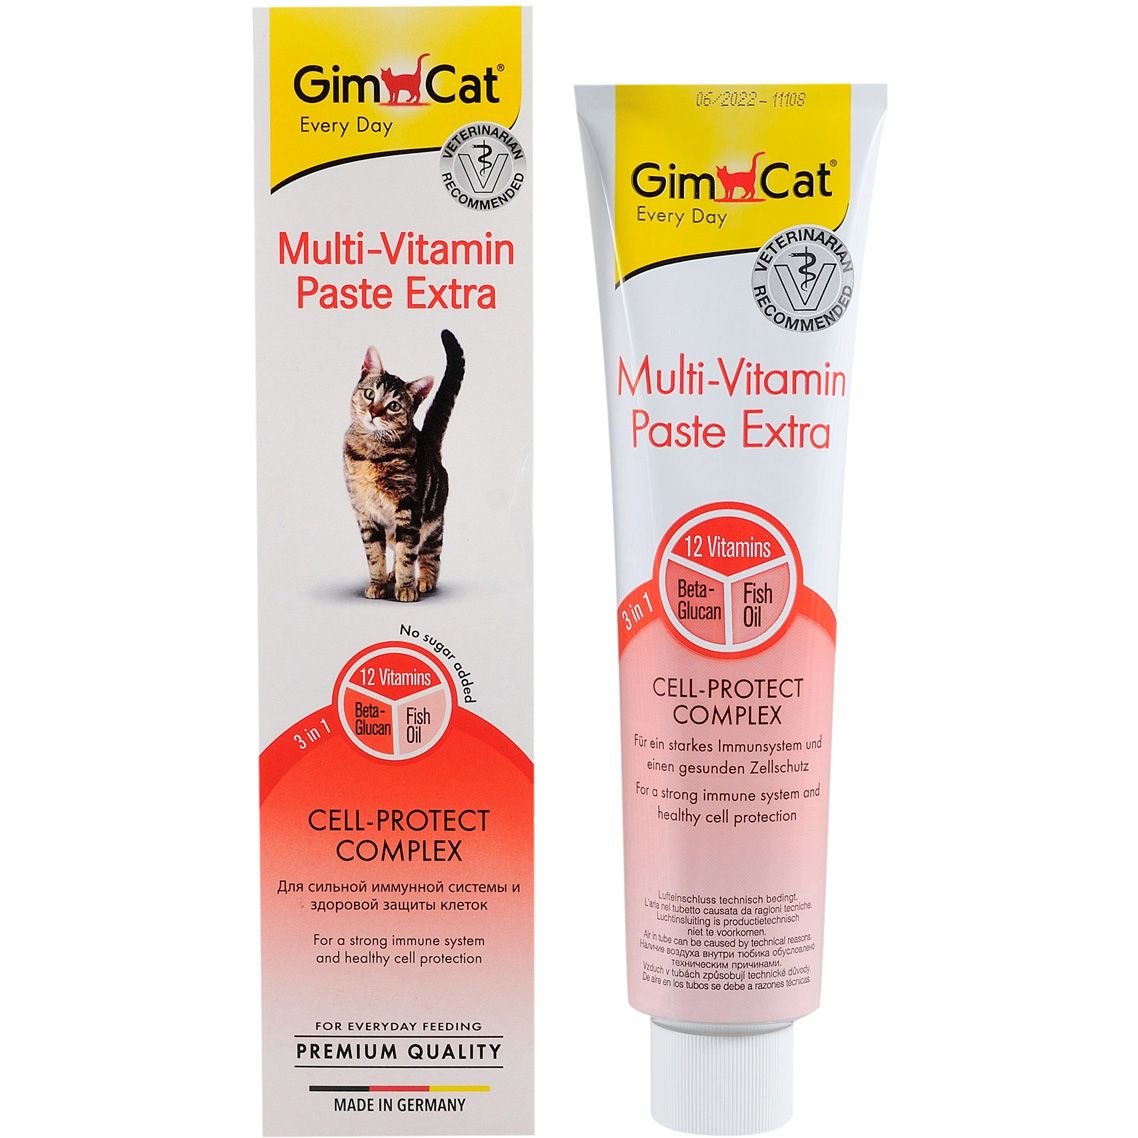 Мультивитаминная паста для кошек GimCat Every Day Экстра, 200 гр - фото 1